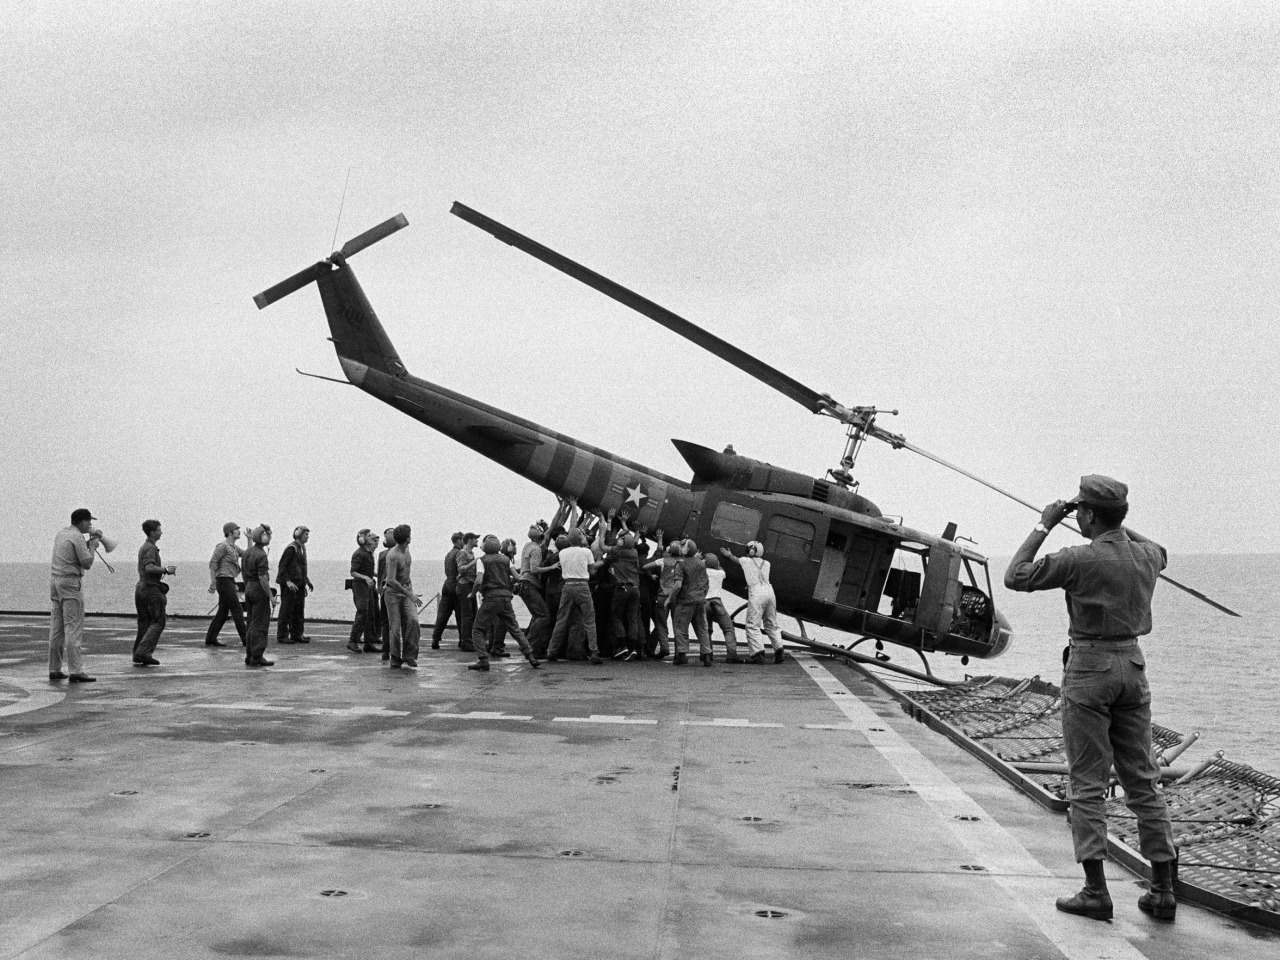 Lính hải quân Mỹ trên chiến hạm USS Blue Ridge đẩy một chiếc trực thăng xuống biển để dọn chỗ đón những chuyến bay chở người di tản khác từ Sài Gòn tới.